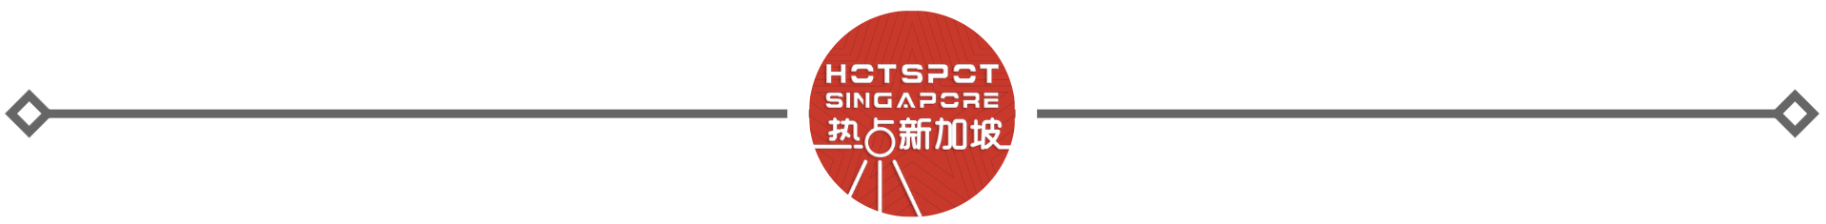 热点周末玩乐指南-热点新加坡